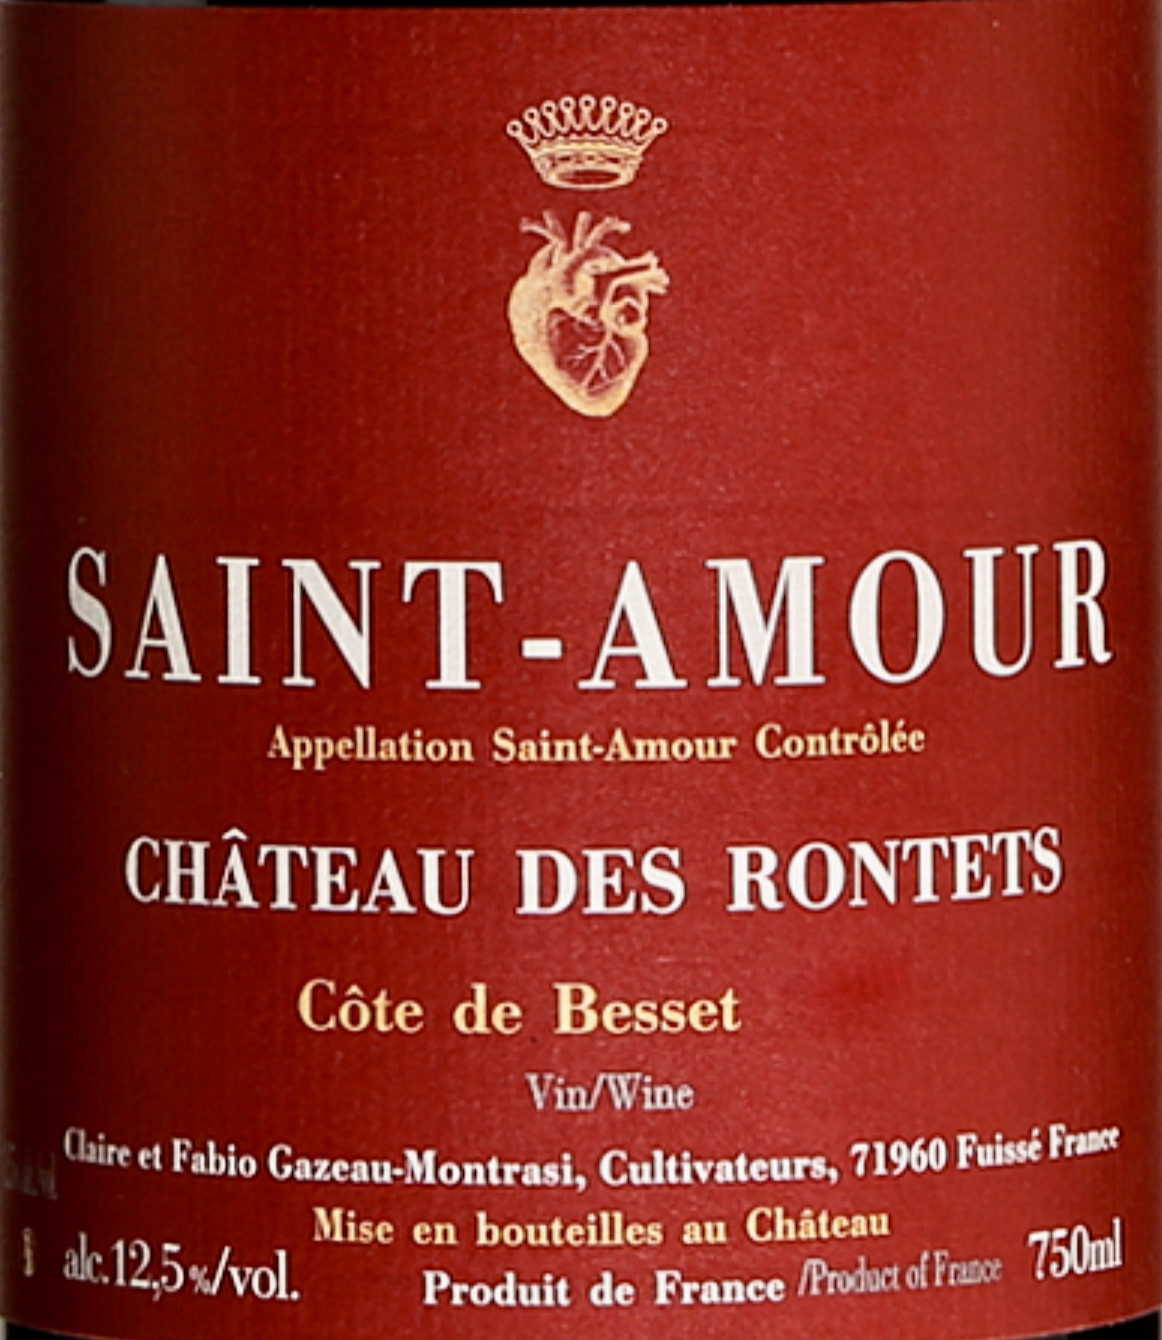 Saint-Amour Le Château des Ronnets vous invite à une délicieuse expérience de dégustation parfaite pour célébrer l'occasion romantique de la Saint-Valentin. Découvrez le monde enchanteur des vins de Saint-Amour